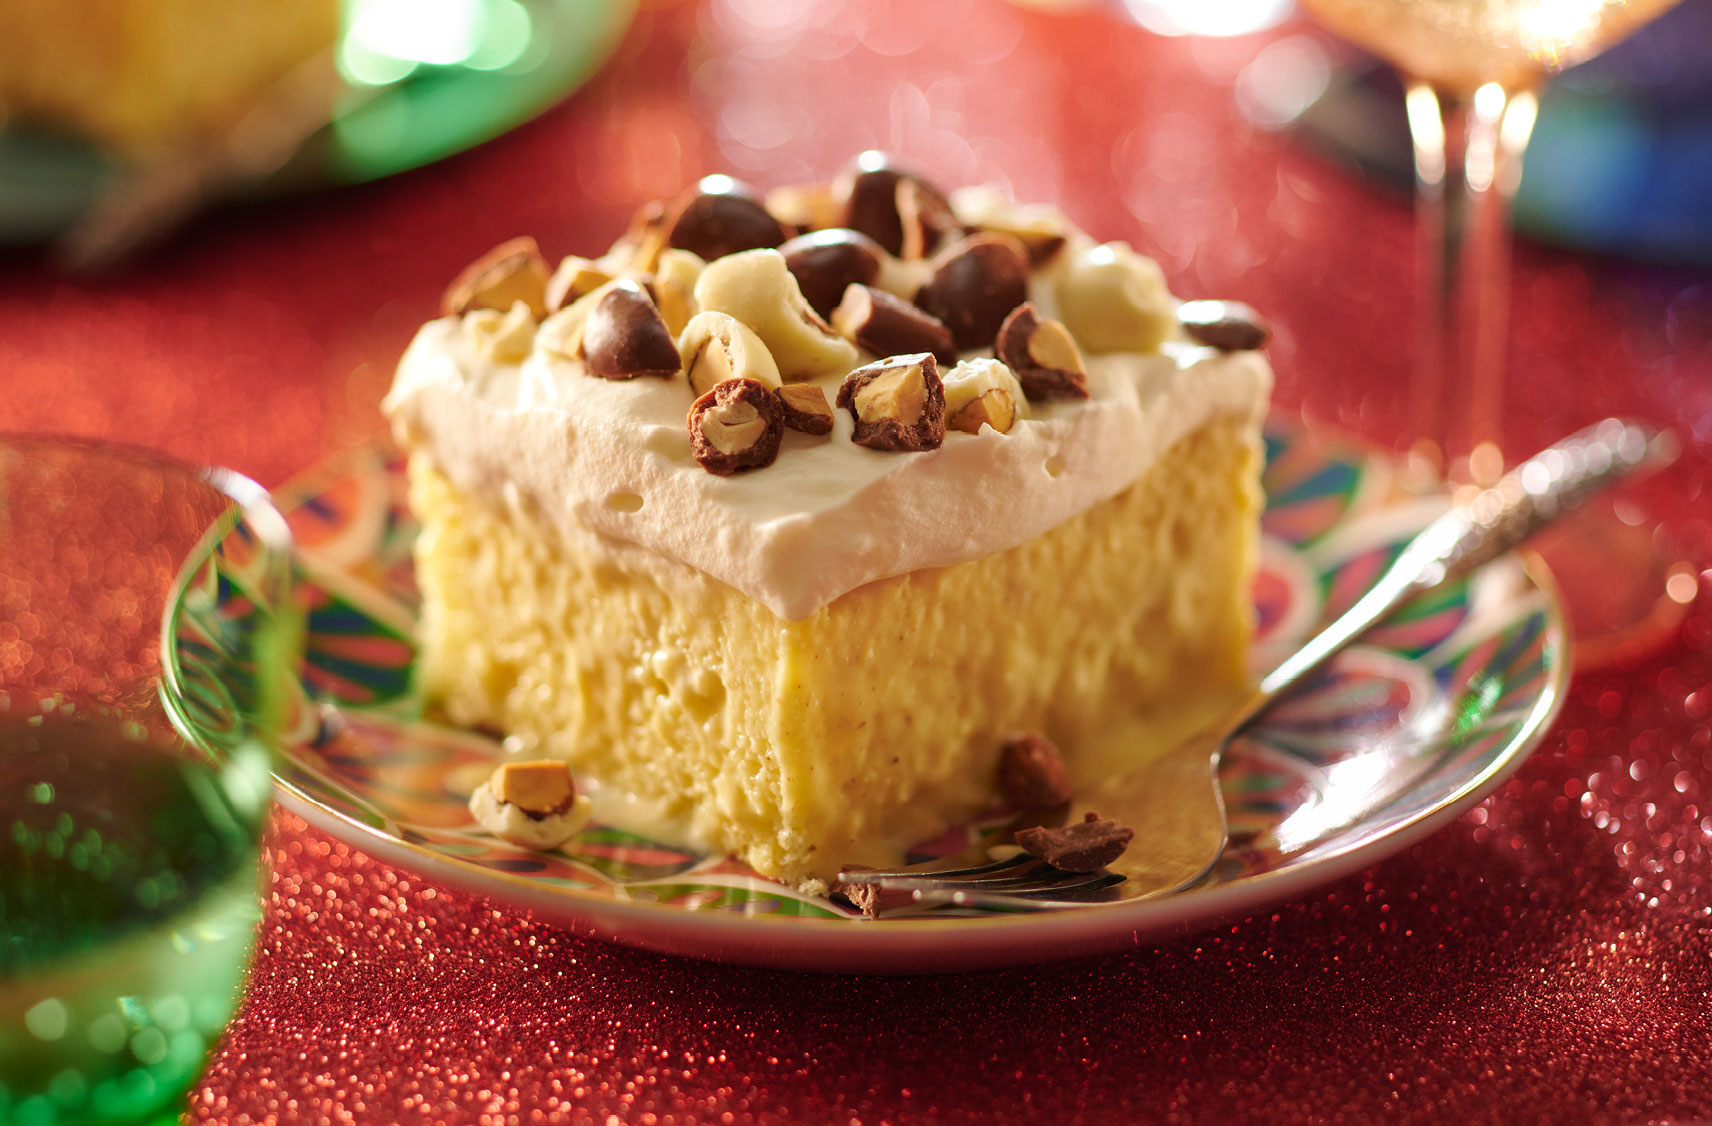 Un morceau de gâteau avec un glaçage fouetté garni d'amandes enrobées de chocolat sur une assiette festive.